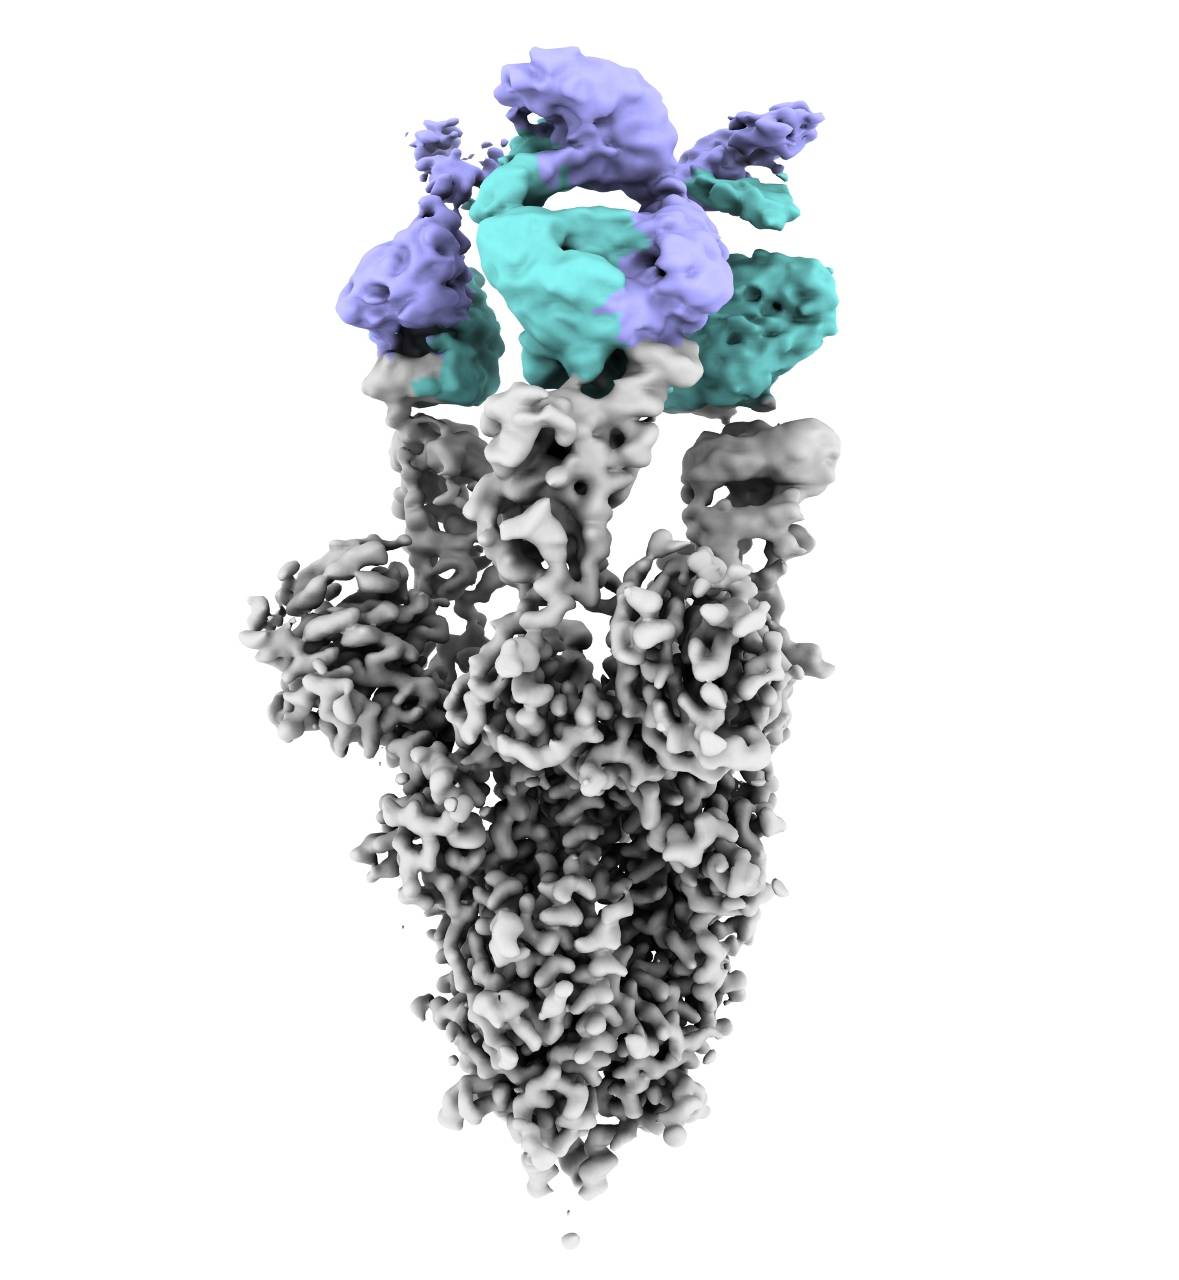 Imagen obtenida por criomicroscopía electrónica de la proteína Spike del virus SARS-CoV2 con el nuevo anticuerpo unido